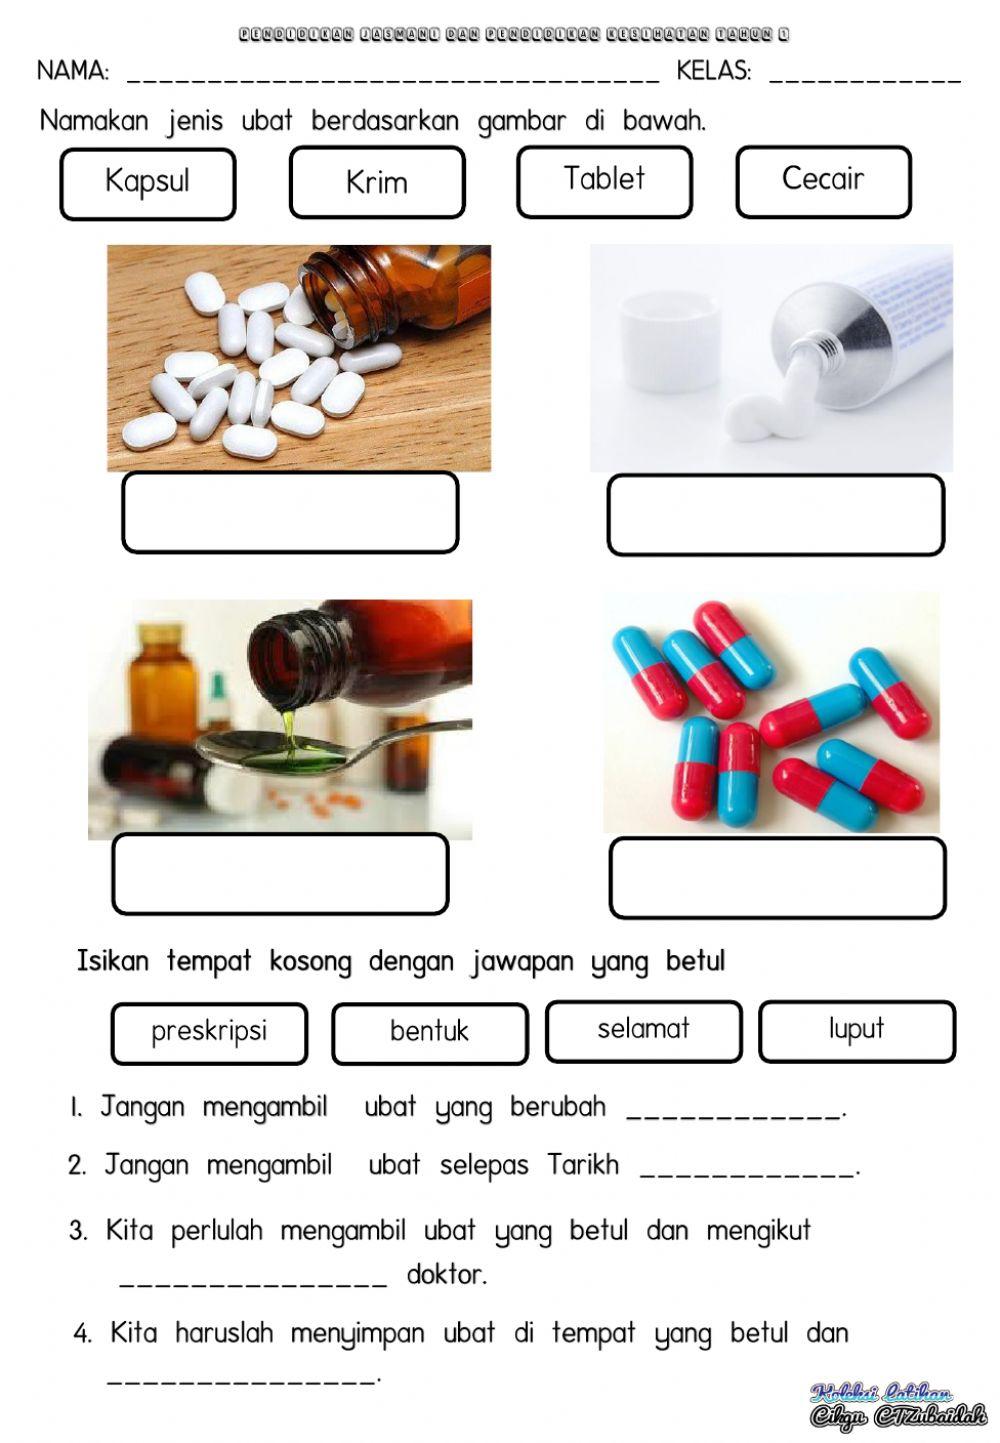 Jenis-jenis ubat